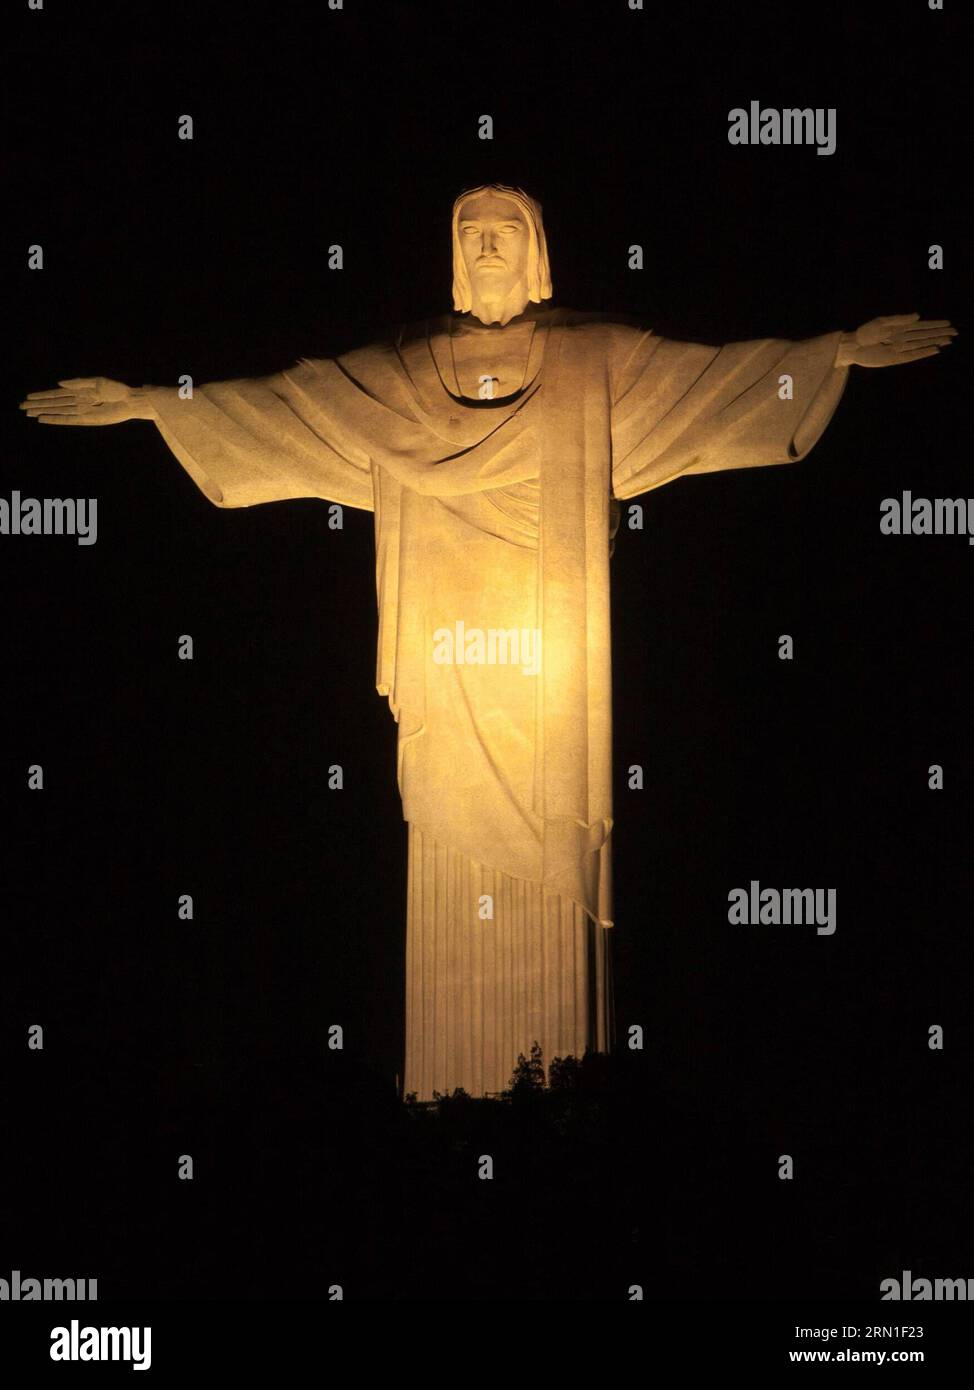 (141226) -- RIO DE JANEIRO, 26 décembre 2014 -- la statue du Christ Rédempteur est illuminée de lumière jaune marquant la Pâques à Rio de Janeiro, Brésil, avril. 19, 2014. Christ Rédempteur est une statue célèbre de Jésus-Christ à Rio de Janeiro, au Brésil, créée par le sculpteur français Paul Landowski et construite par l'ingénieur brésilien Heitor da Silva Costa, en collaboration avec l'ingénieur français Albert Caquot. La hauteur de la statue atteint 30 mètres et ses bras s'étendent sur 28 mètres de large. Sous la statue, il y a une petite chapelle dédiée à notre-Dame Aparecida, la sainte patronne du Brésil. TH Banque D'Images